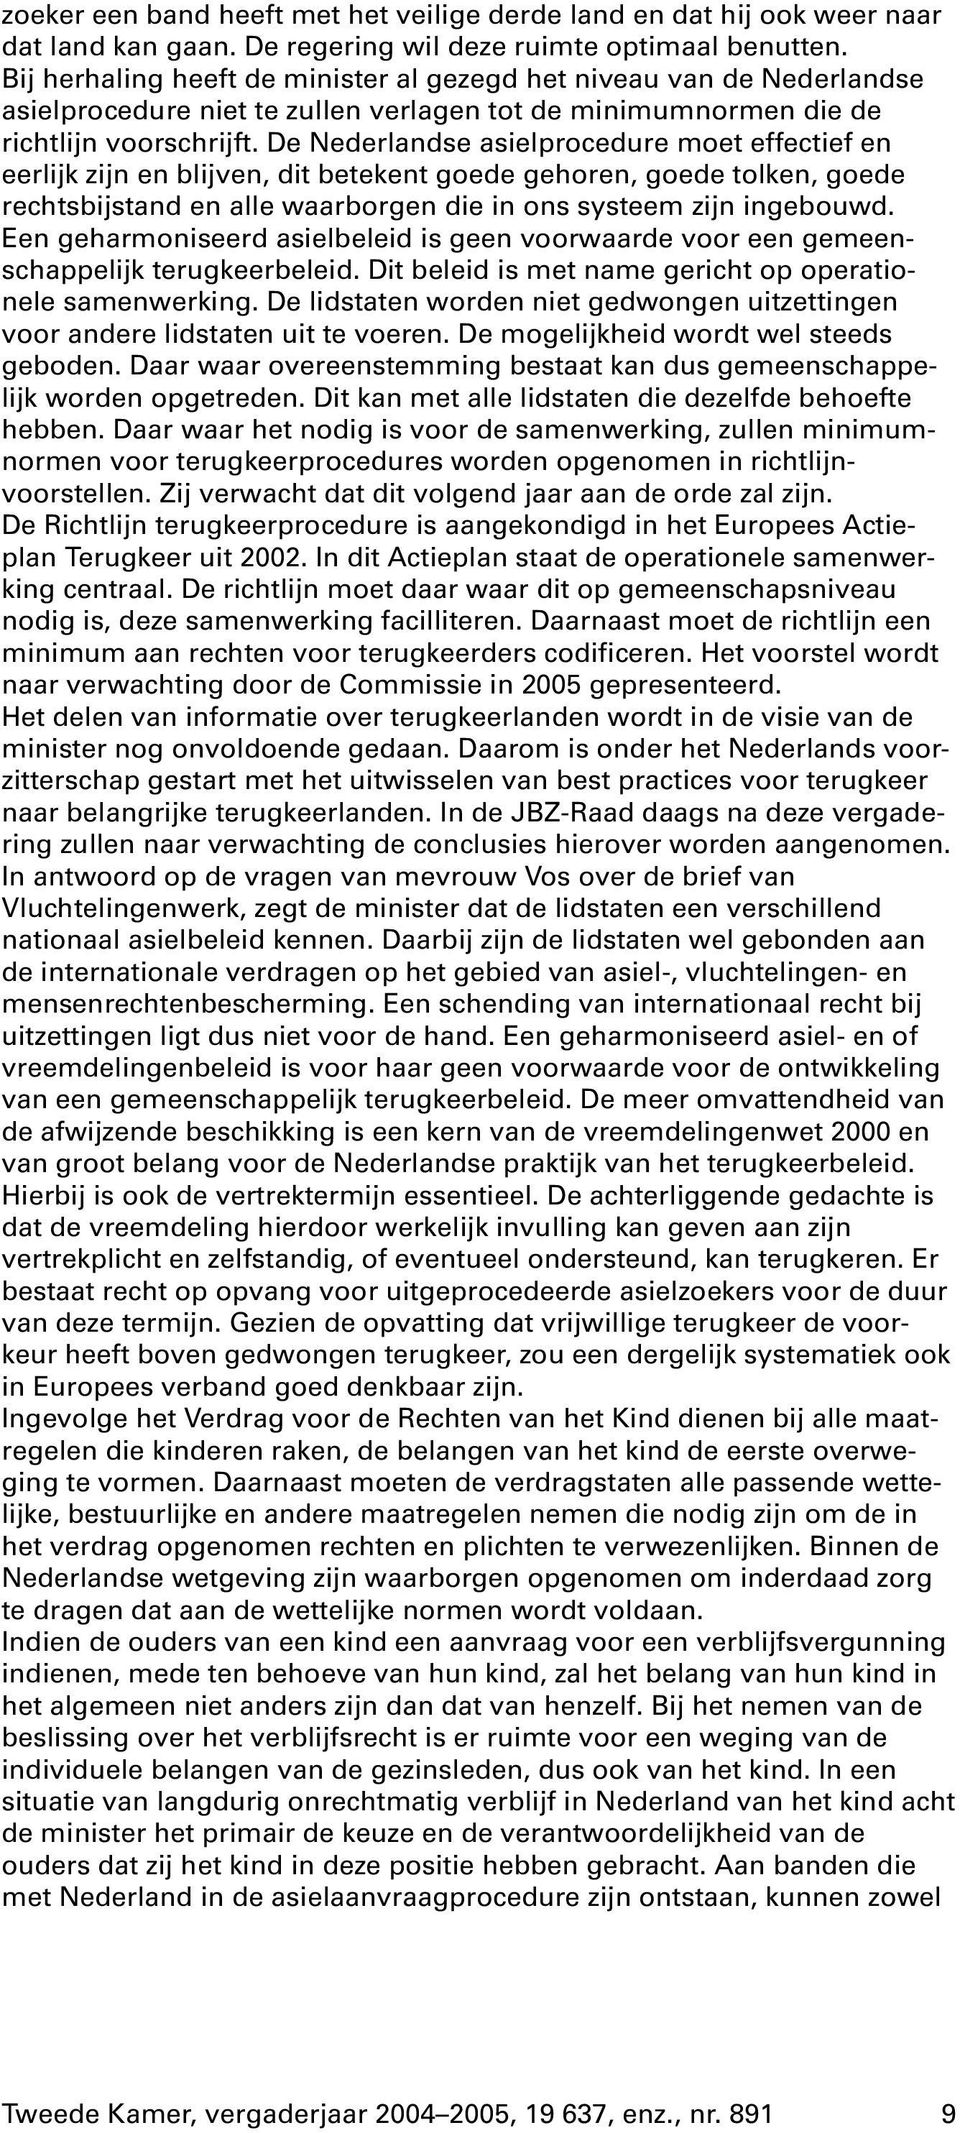 De Nederlandse asielprocedure moet effectief en eerlijk zijn en blijven, dit betekent goede gehoren, goede tolken, goede rechtsbijstand en alle waarborgen die in ons systeem zijn ingebouwd.